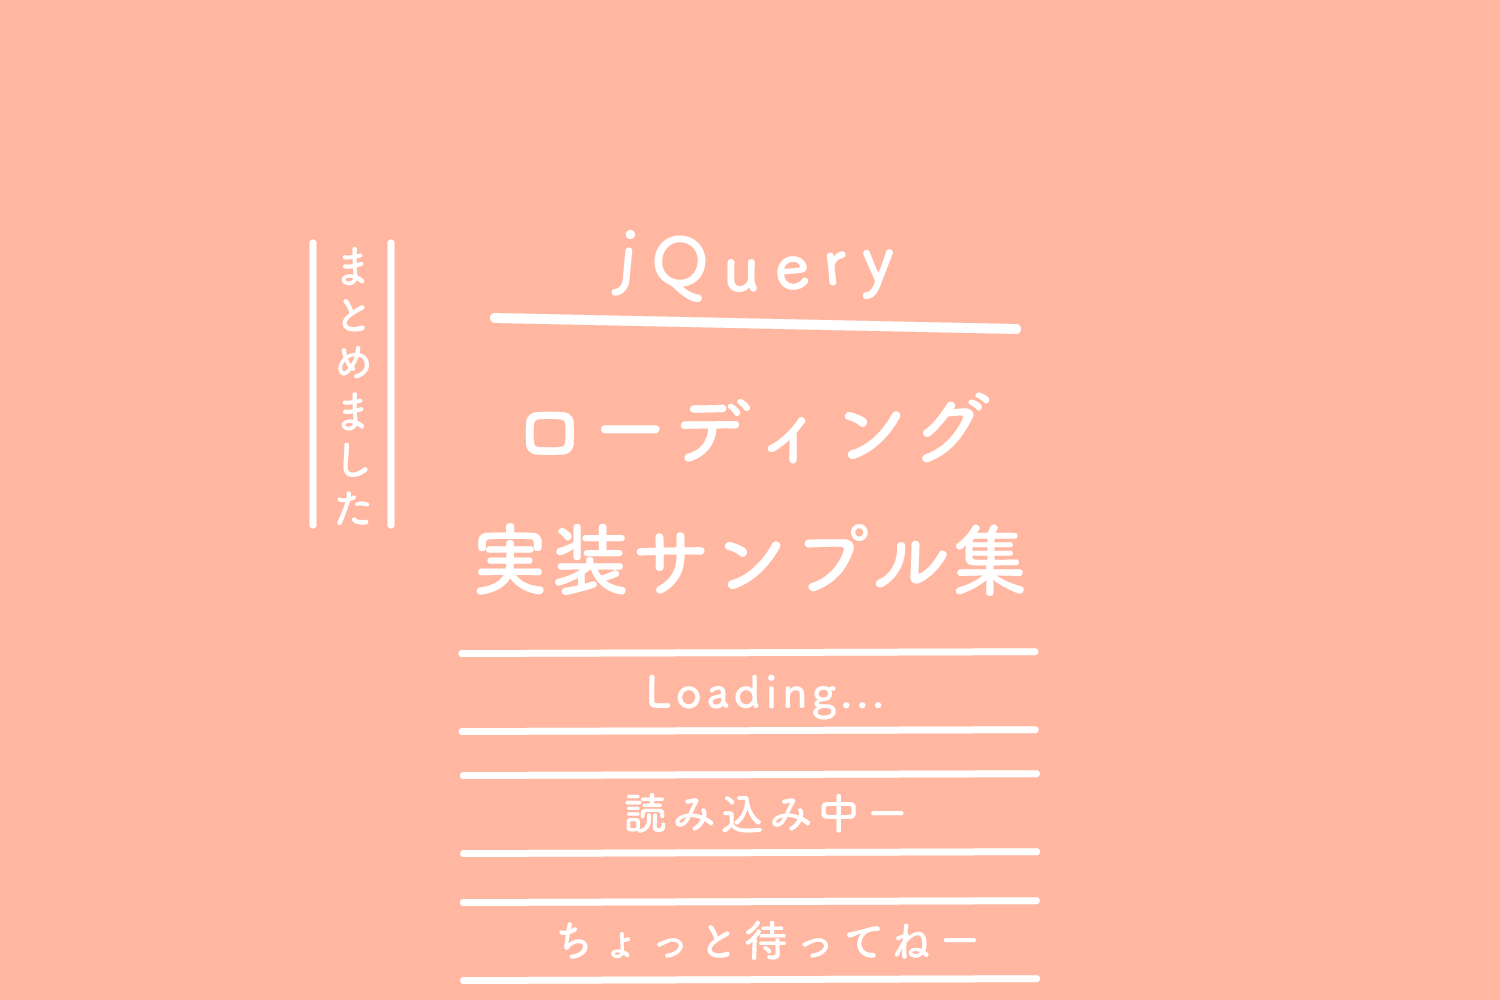 【jQuery】 ローディング、実装サンプル集